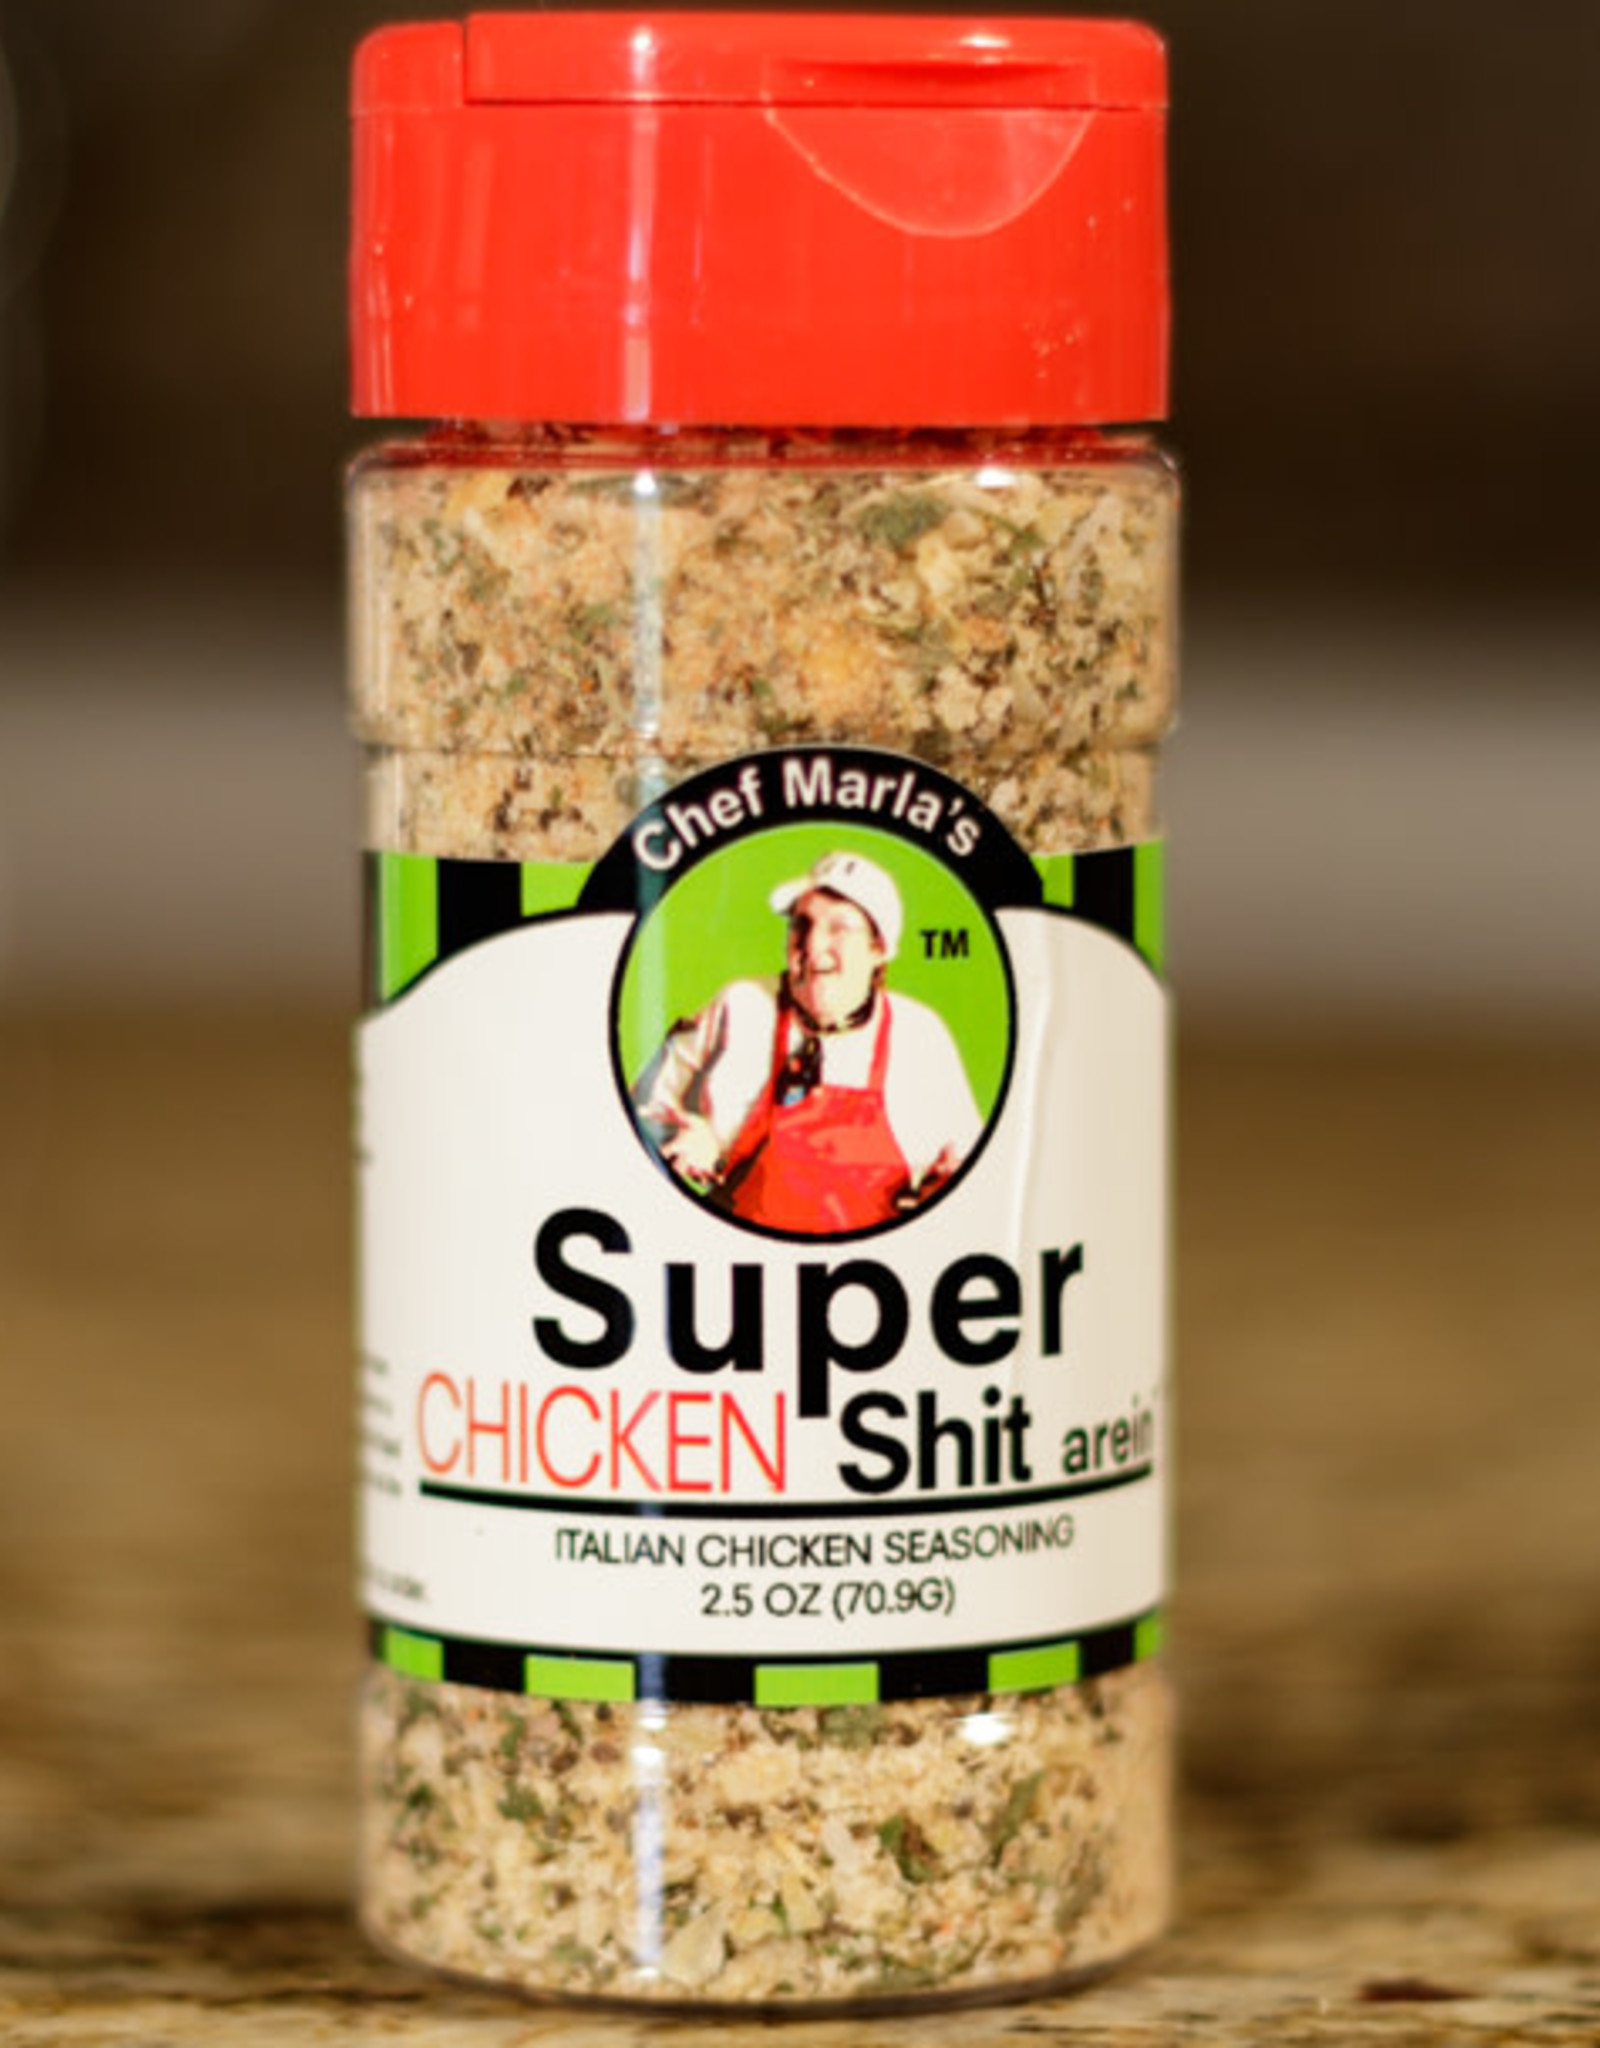 Chef Marla’s Super Chicken Shit arein